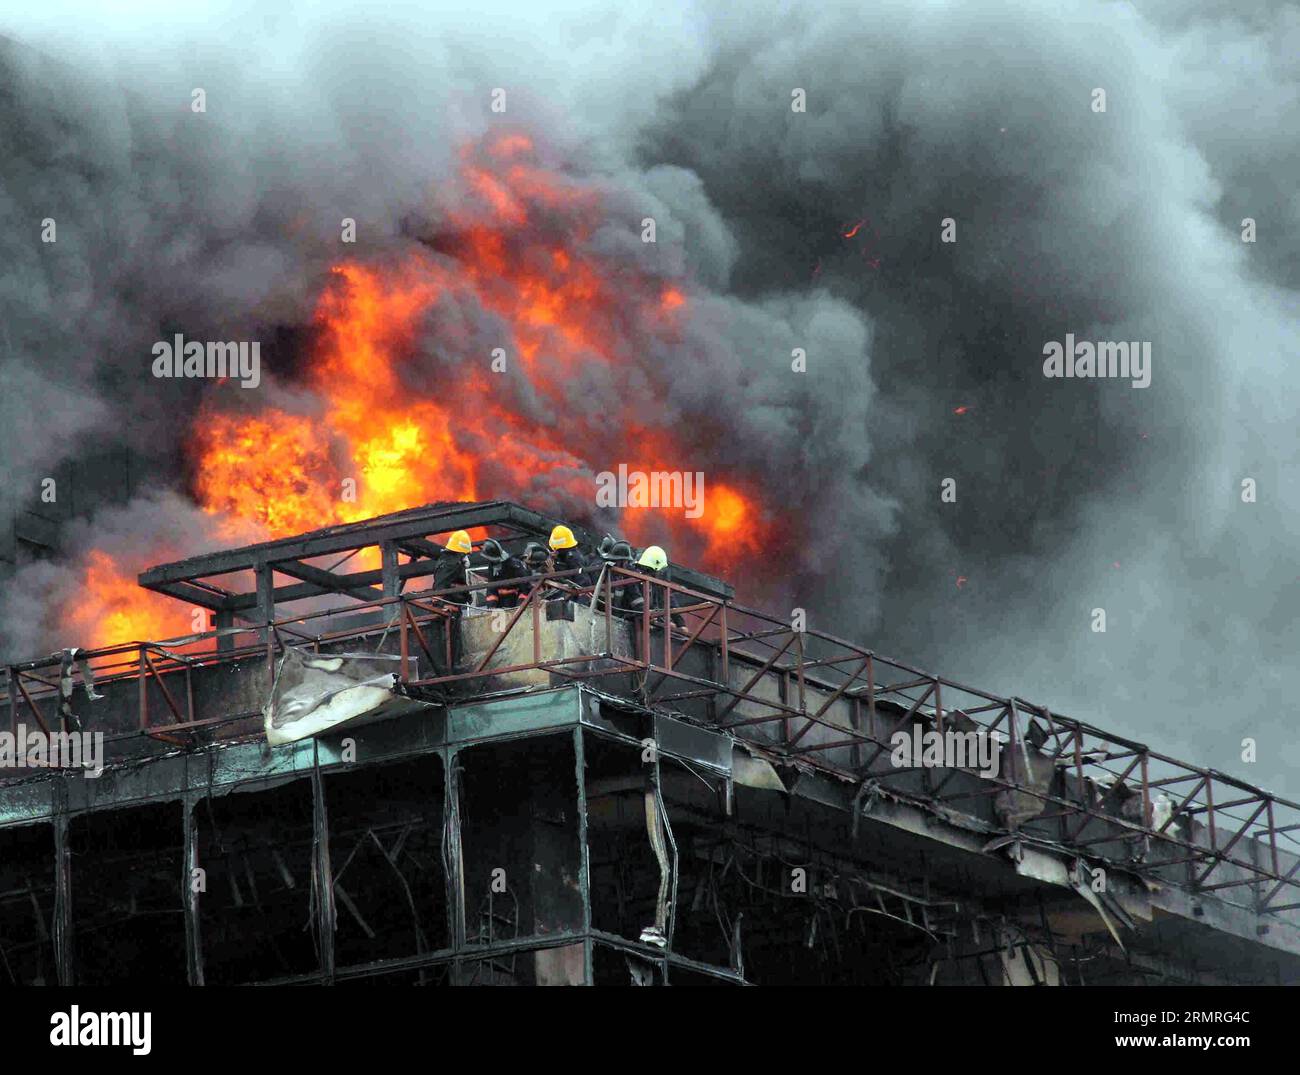 (140718) -- MUMBAI, 18 luglio 2014 (Xinhua) -- i vigili del fuoco cercano di trovare una via d'uscita al 21° piano dell'edificio del Lotus Business Park a Mumbai, India, 18 luglio 2014. Un vigile del fuoco è stato ucciso e più di 20 altri sono rimasti intrappolati mentre stavano combattendo l'incendio sulla terrazza di un edificio nel distretto Andheri di Mumbai, in India, ha riferito TIMESNOW. (Xinhua/Stringer)(zhf) INDIA-MUMBAI-FIRE PUBLICATIONxNOTxINxCHN Mumbai 18 luglio 2014 i vigili del fuoco XINHUA cercano di trovare una via d'uscita AL 21° piano del Lotus Business Park Building a Mumbai India 18 luglio 2014 un Vigili del fuoco What KILLED e altro ancora Foto Stock